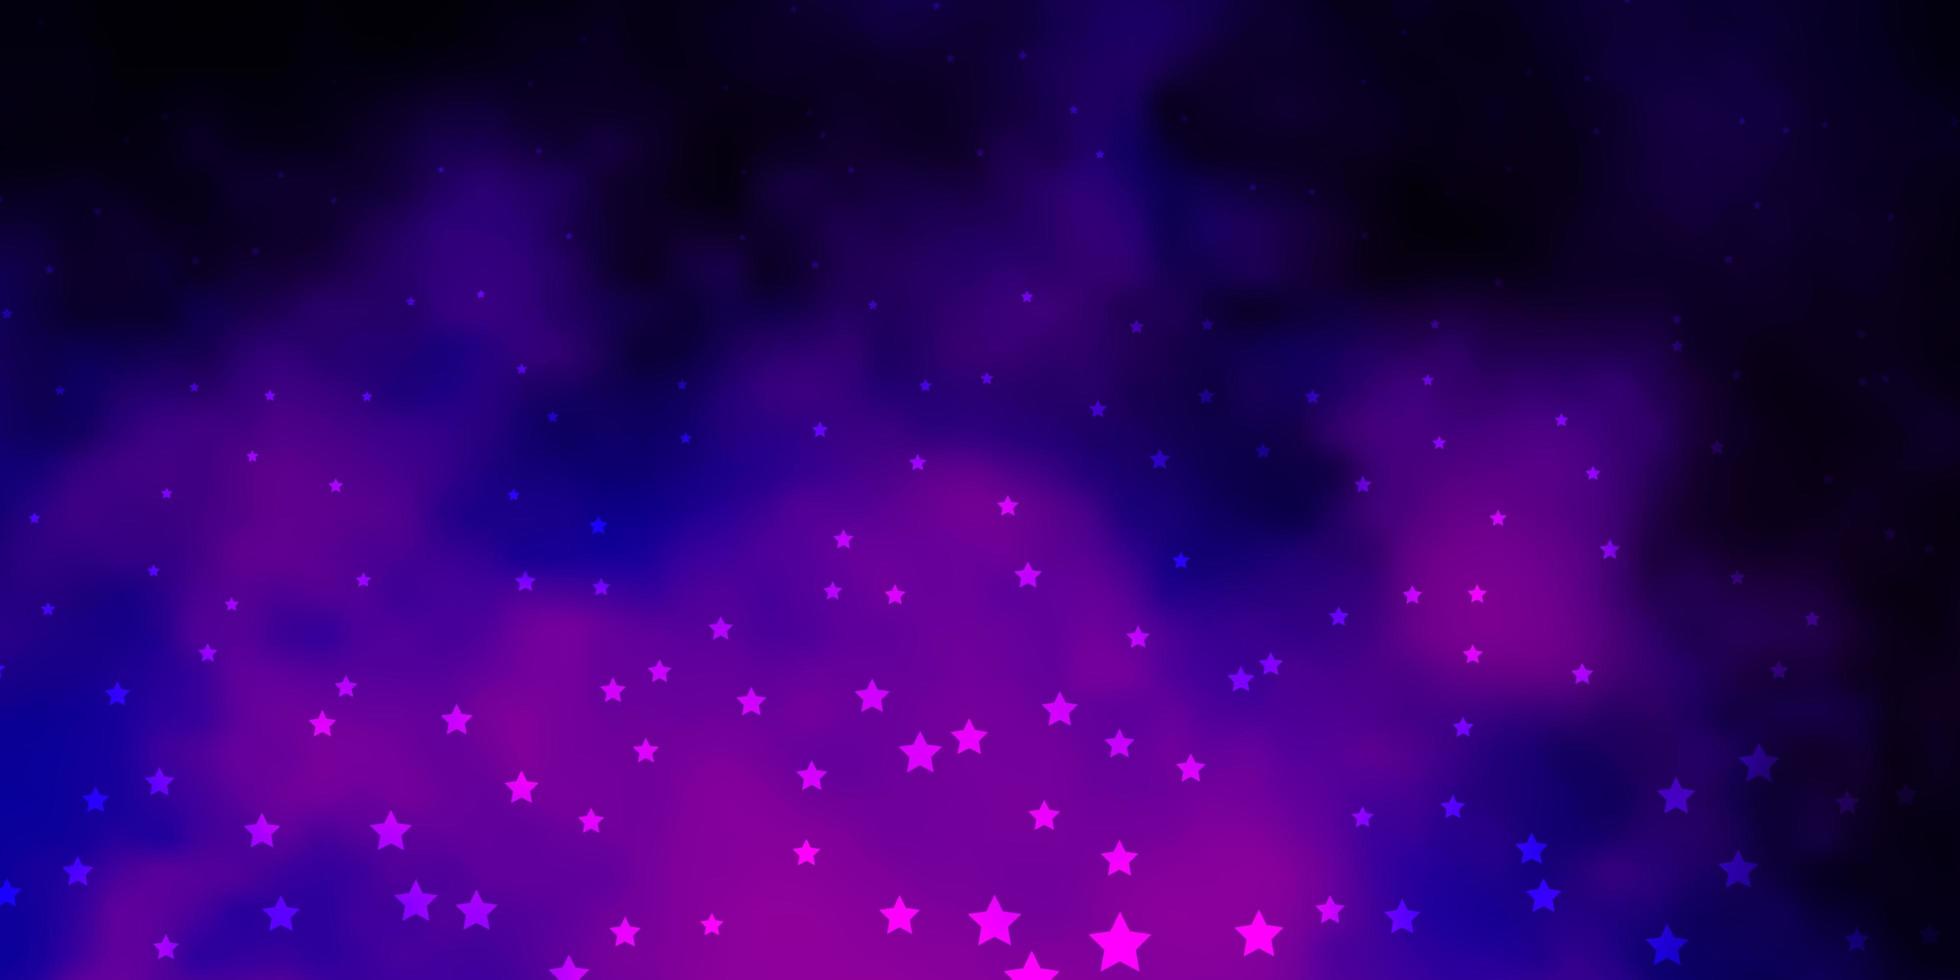 motif vectoriel violet foncé avec des étoiles abstraites illustration abstraite géométrique moderne avec des étoiles design pour la promotion de votre entreprise